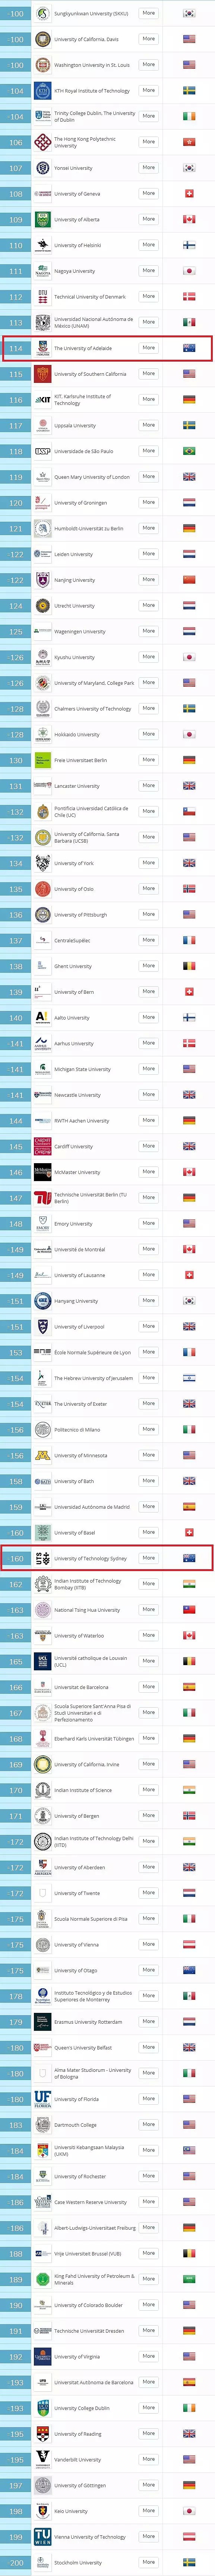 重磅首发！2019版QS世界大学排名榜放出！ANU全澳居首，37所澳大学上榜创纪录！ - 12